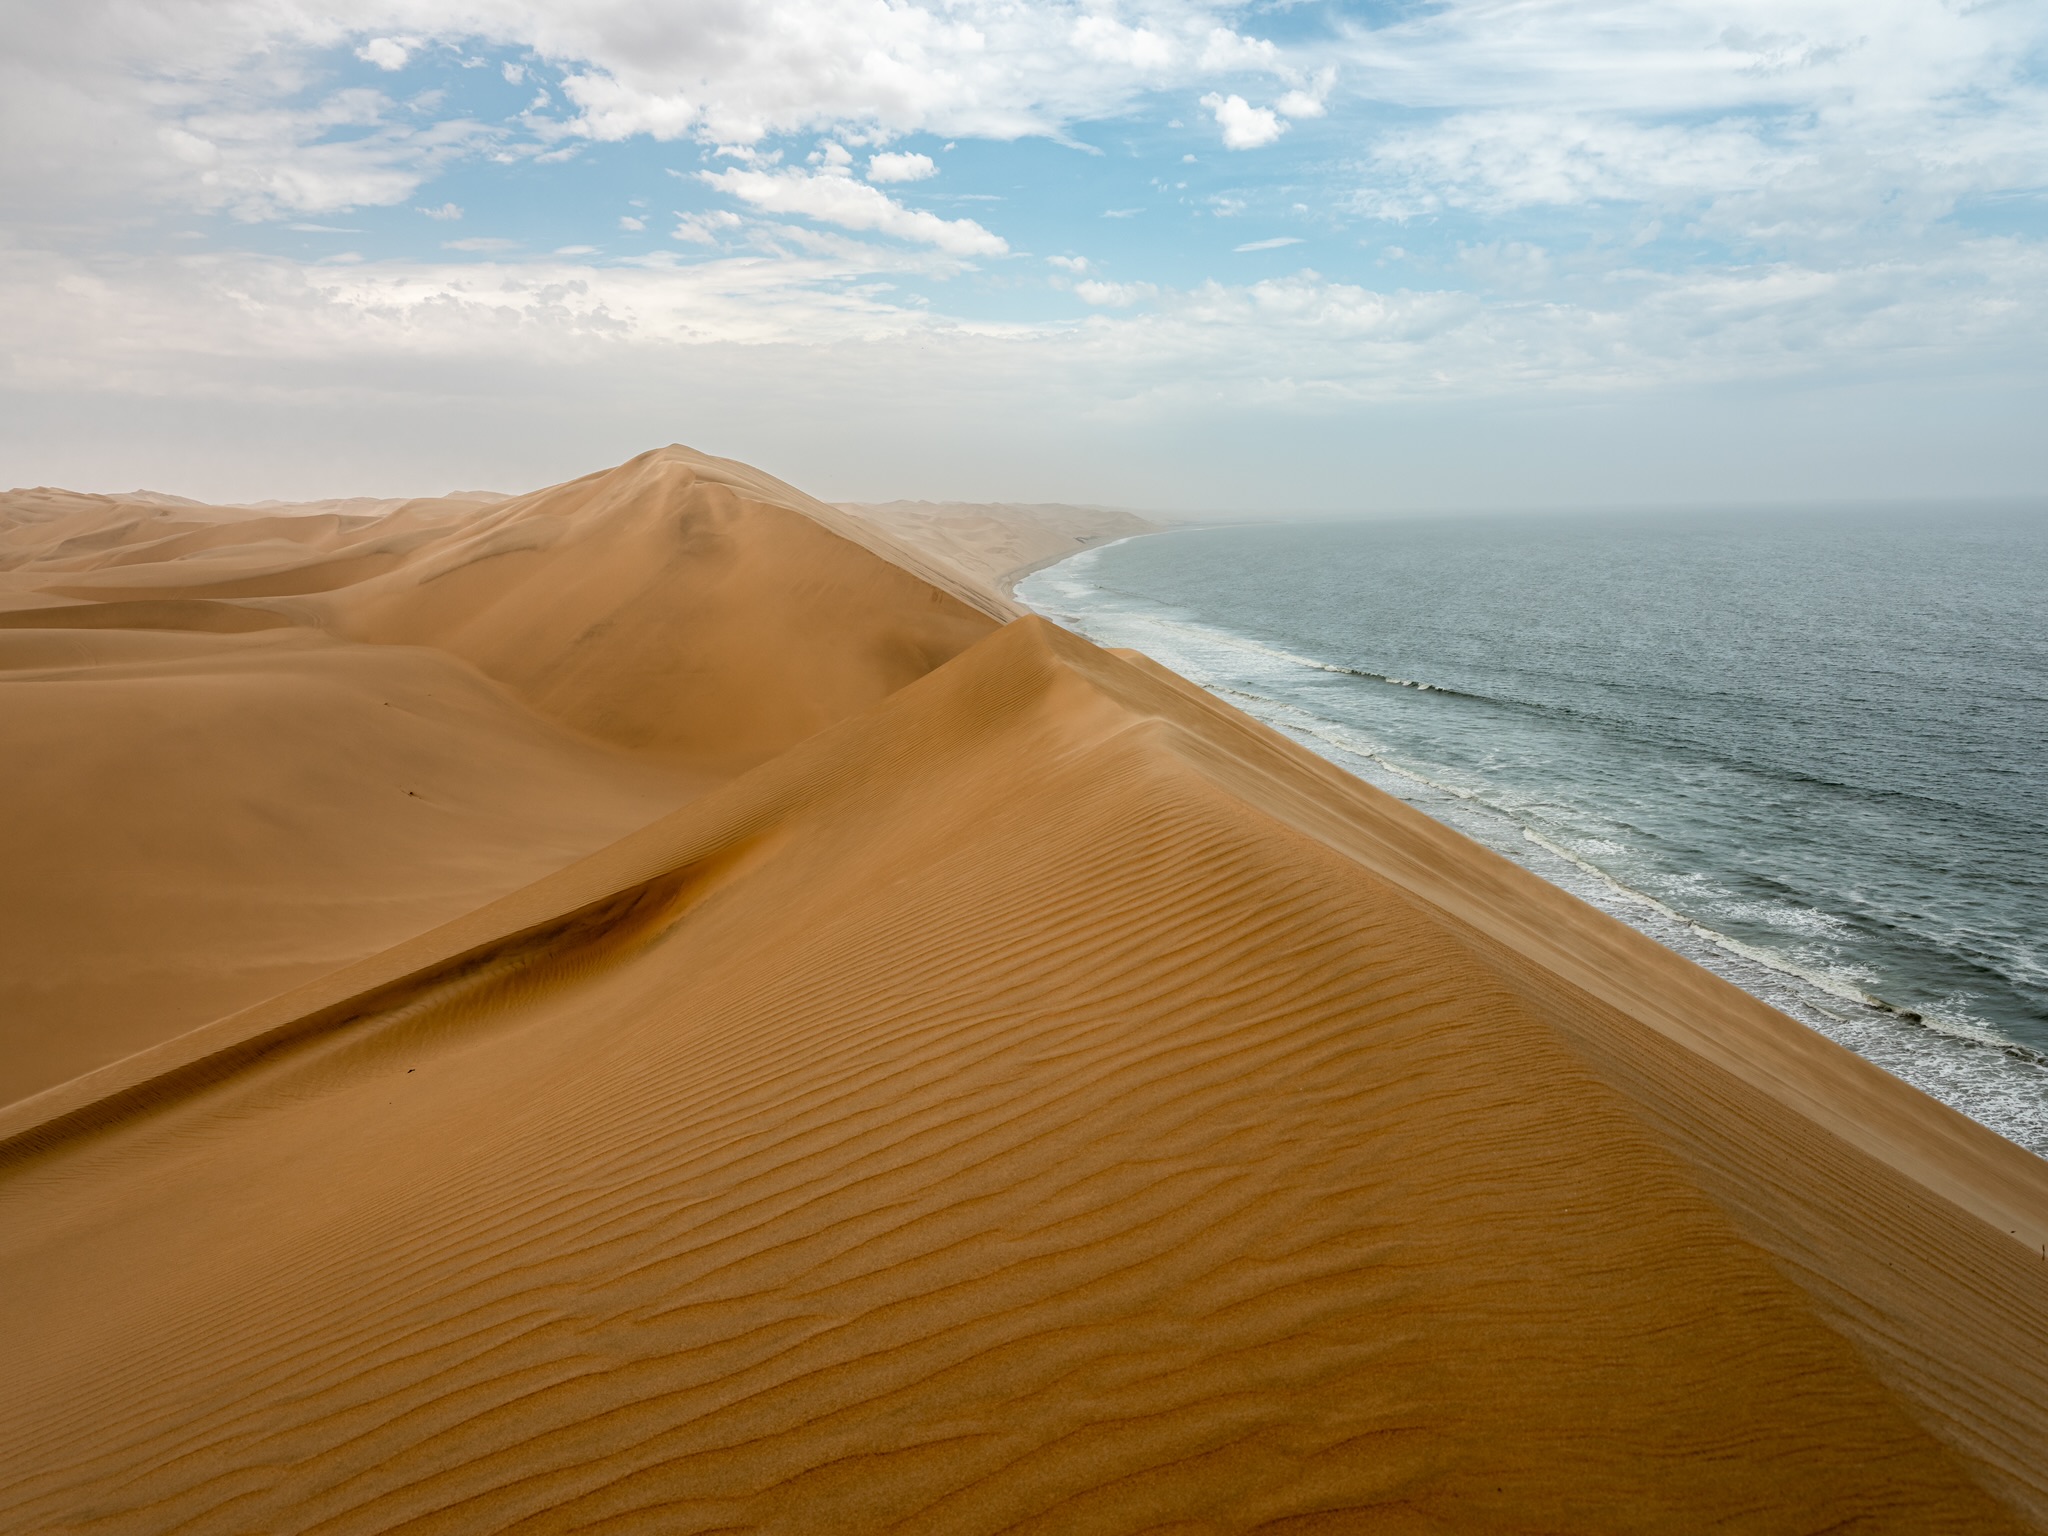 Between dunes and sea...